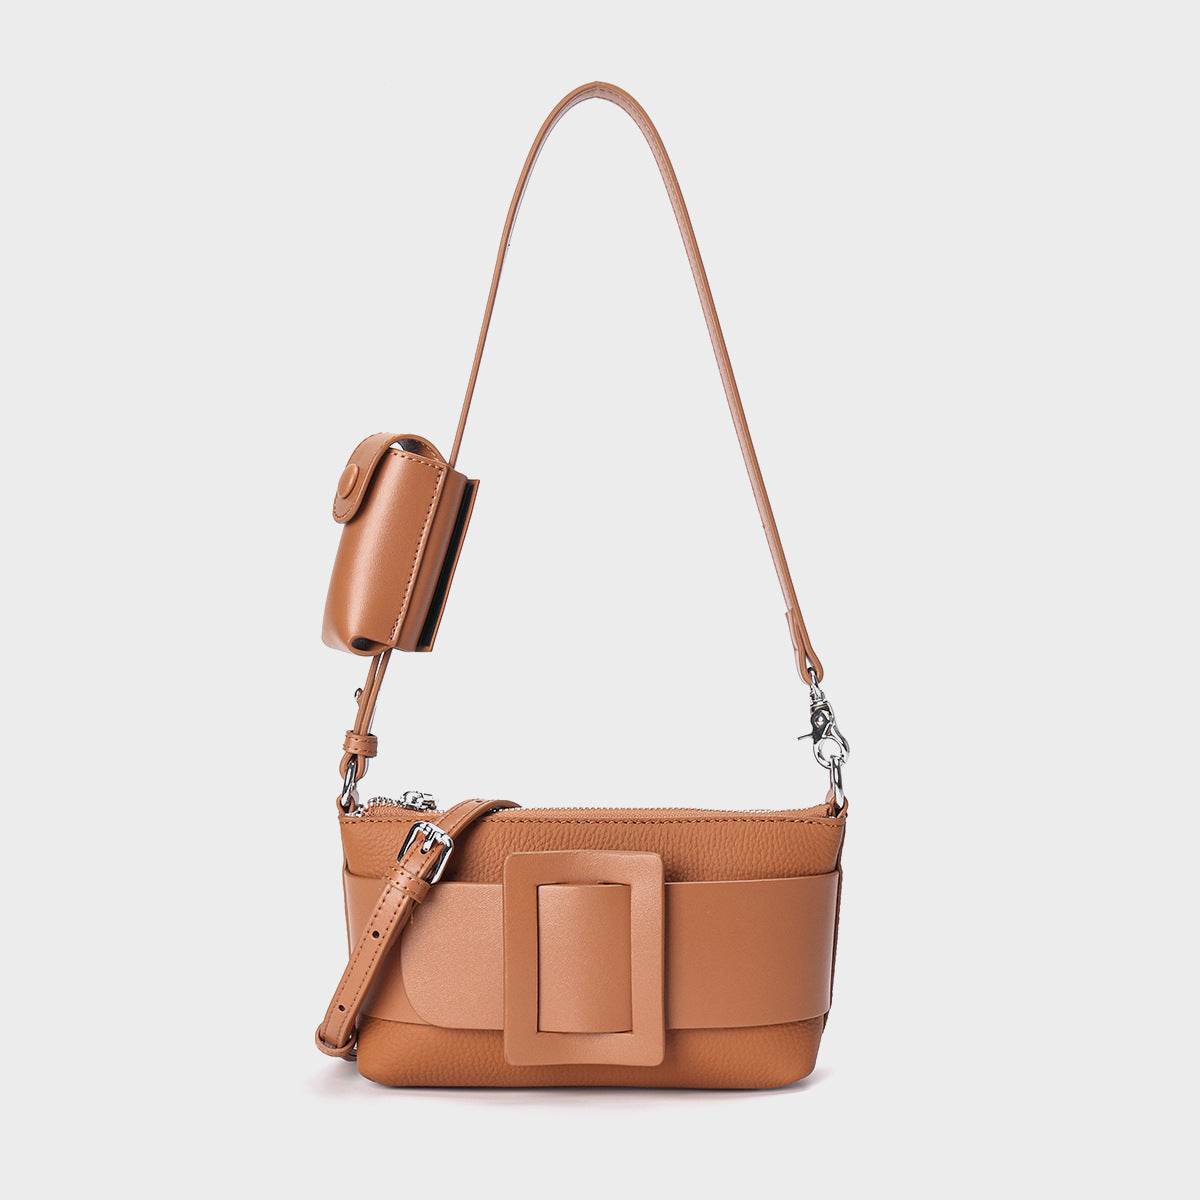 Underarm Leather Women's Portable Messenger Bag